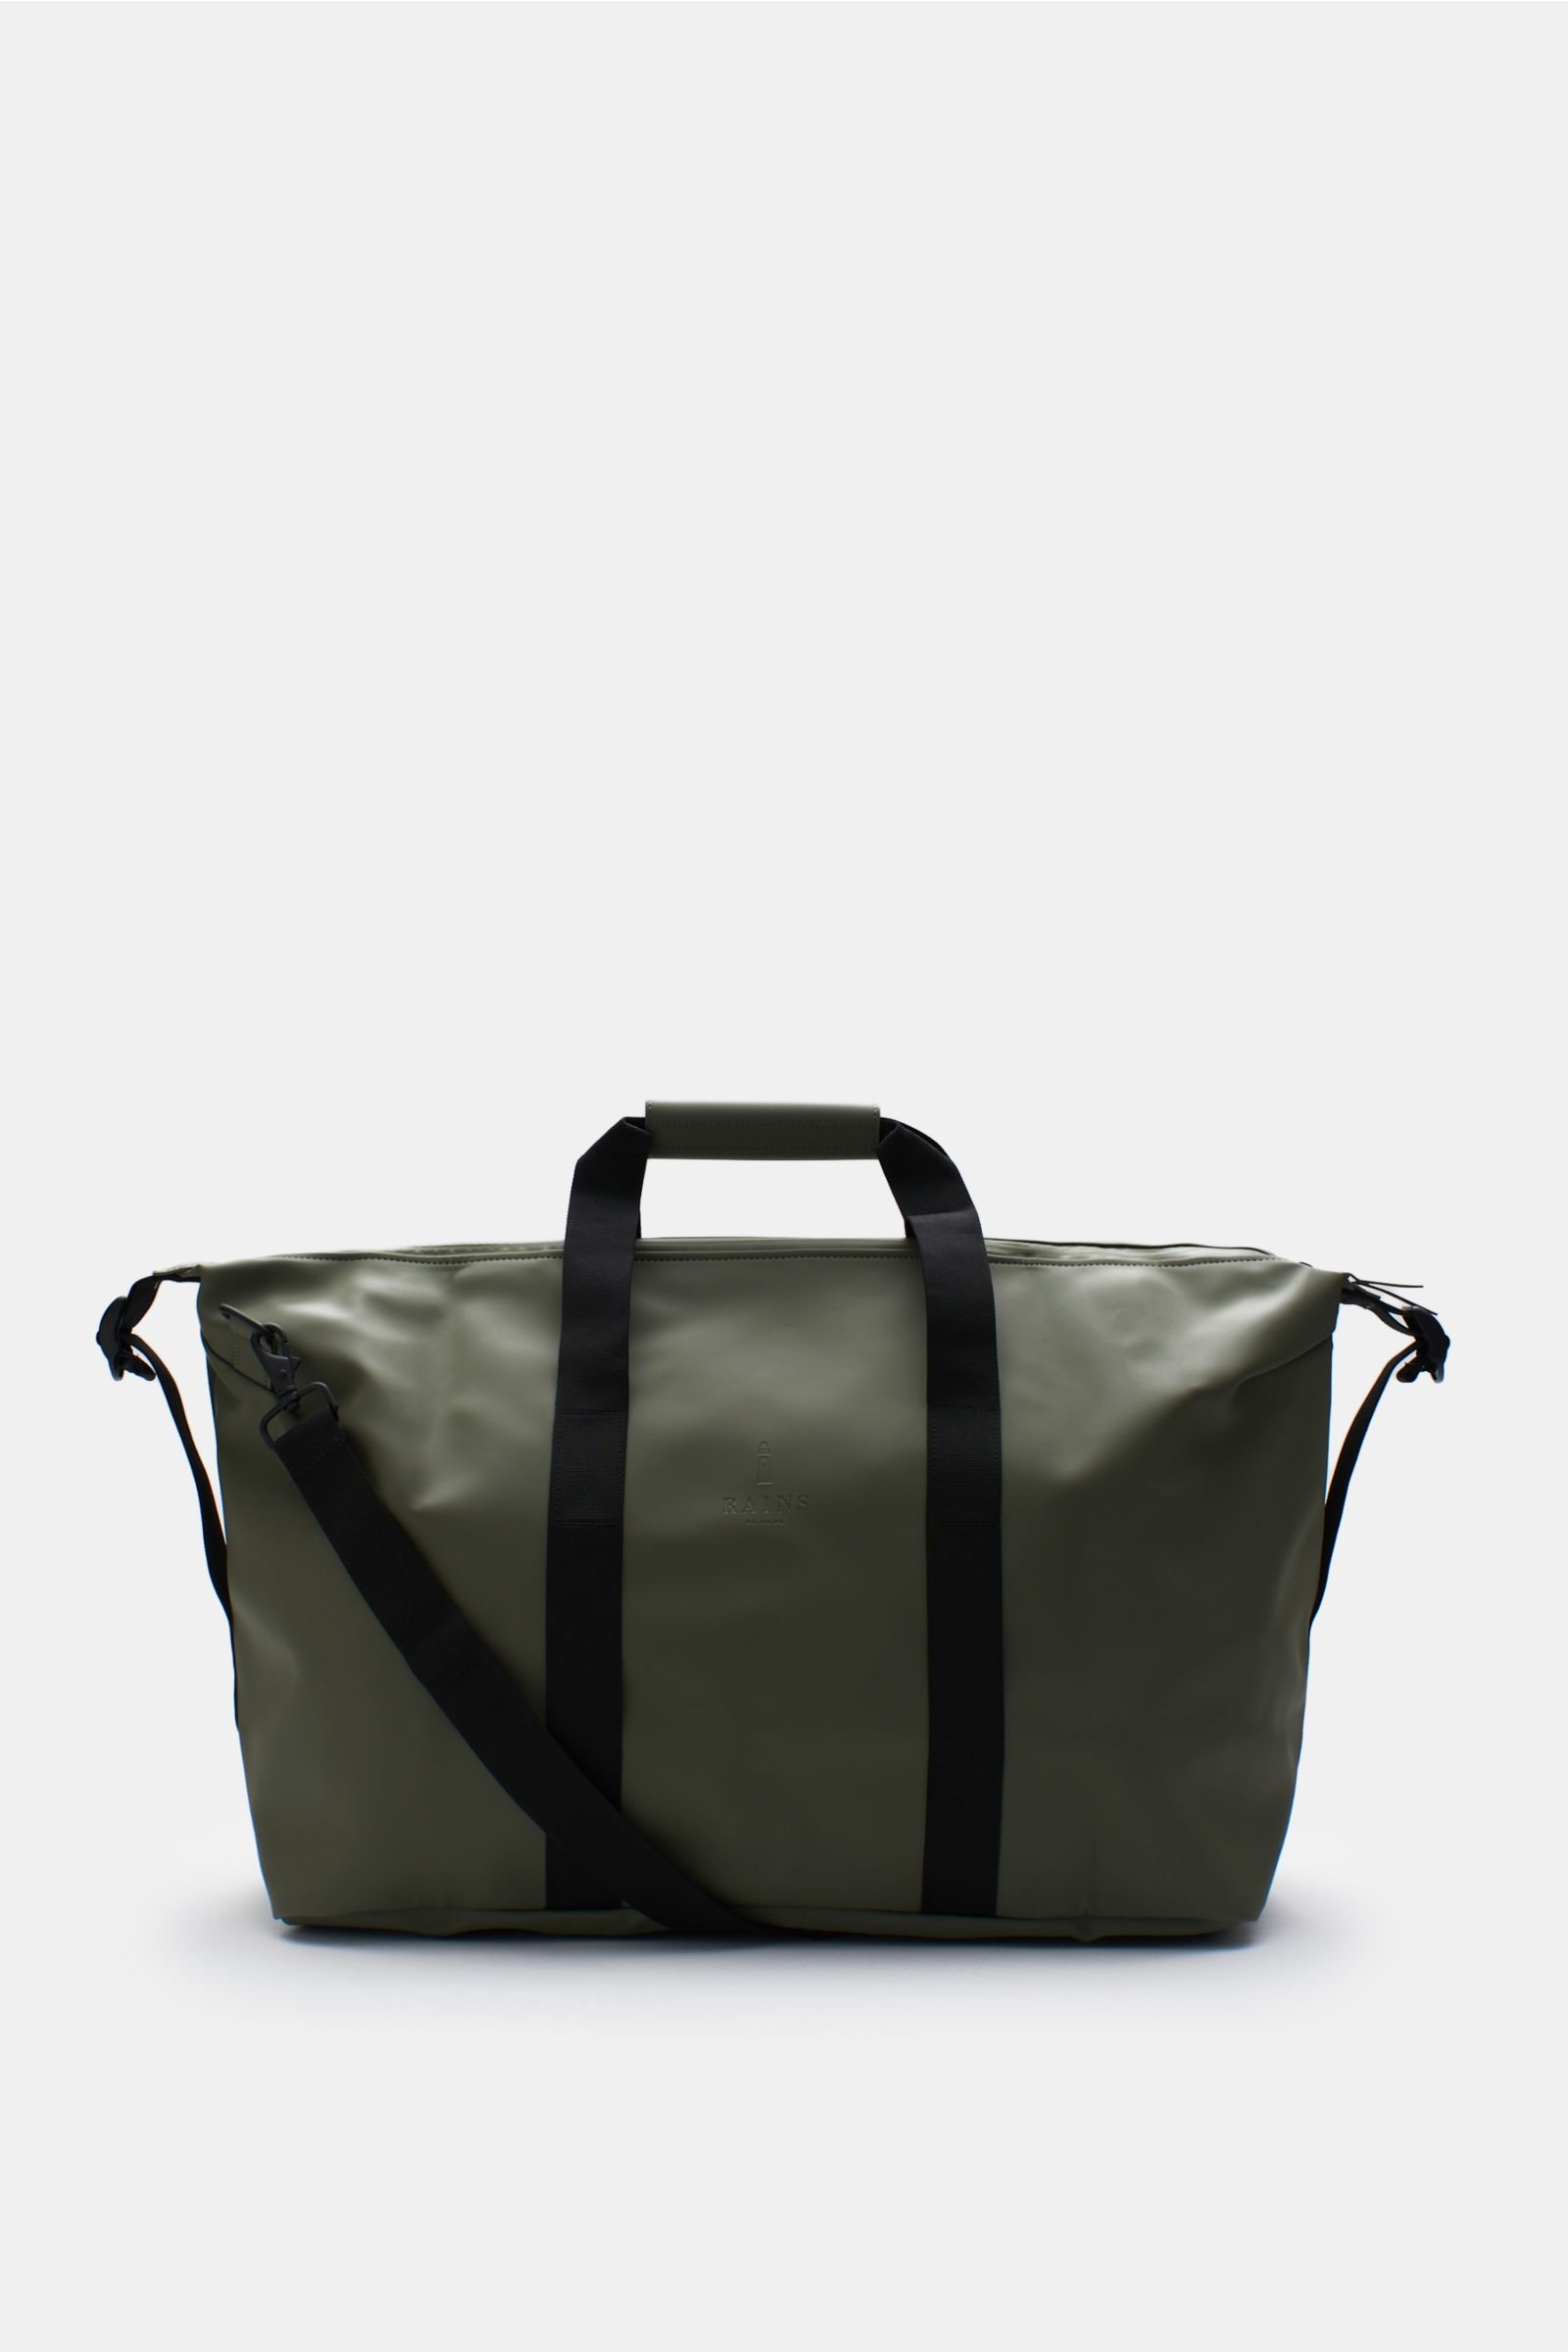 Travel bag 'Weekend Bag' olive